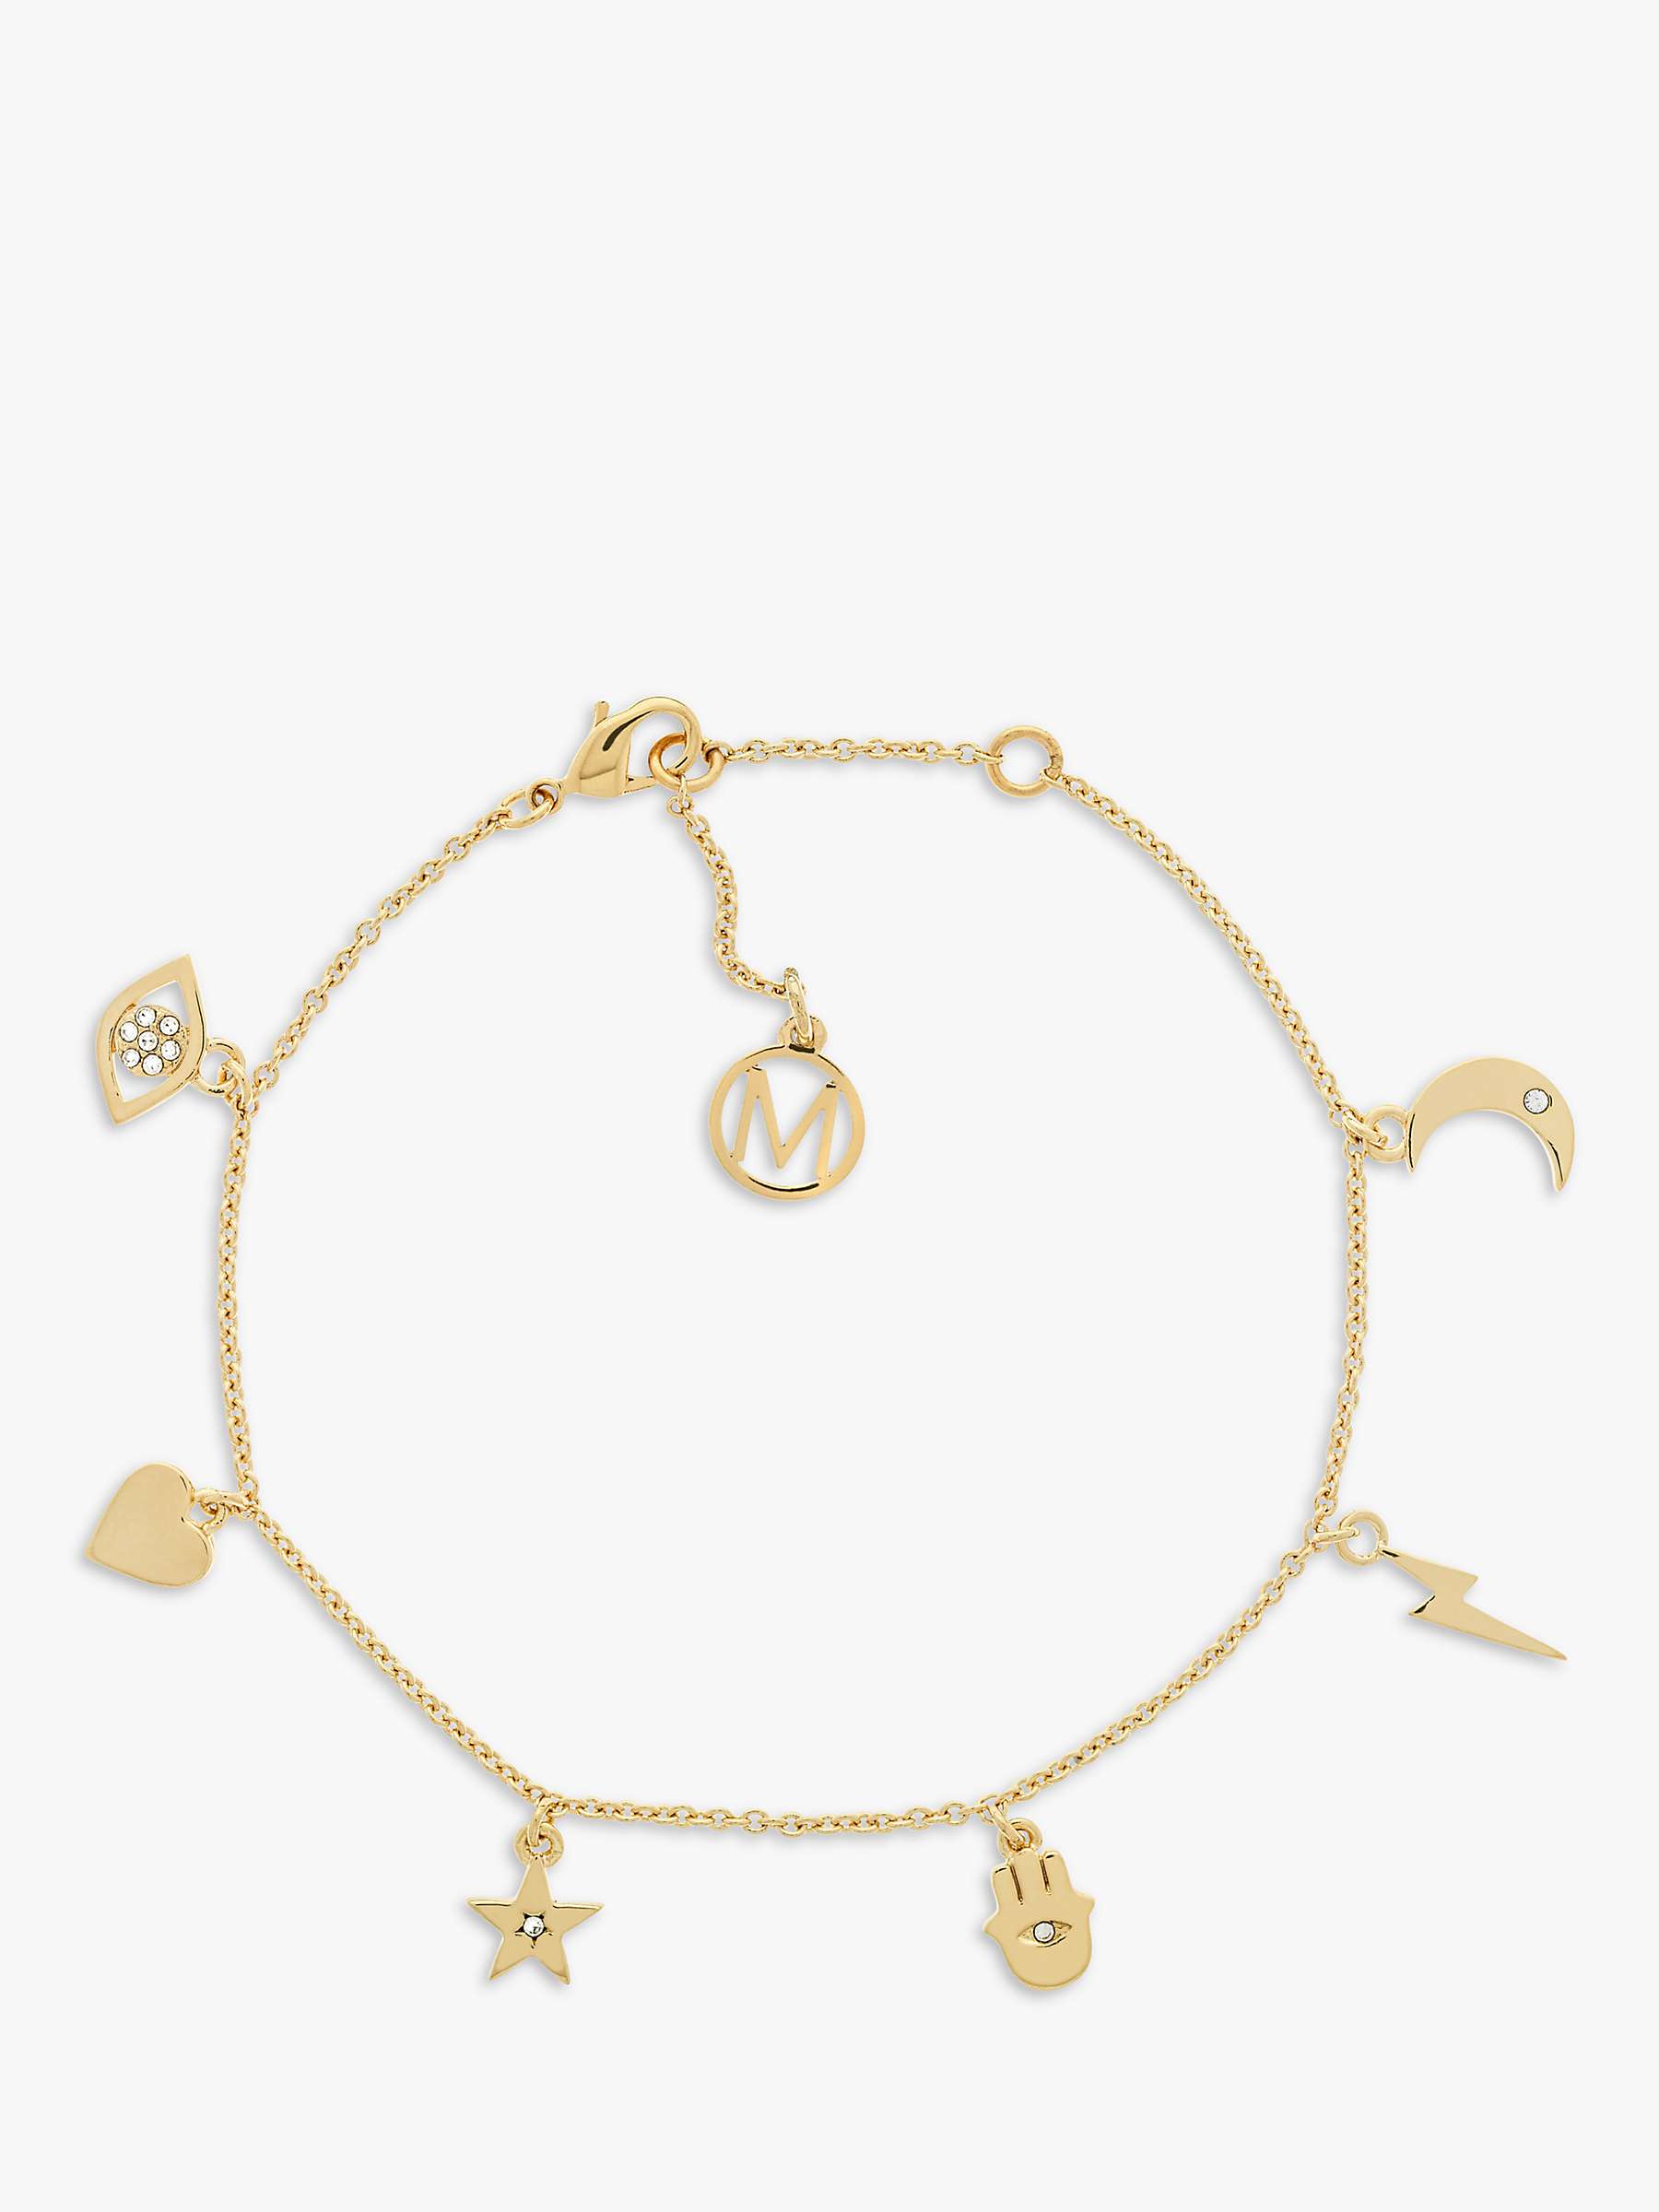 Buy Melissa Odabash Crystal Charm Bracelet, Gold Online at johnlewis.com